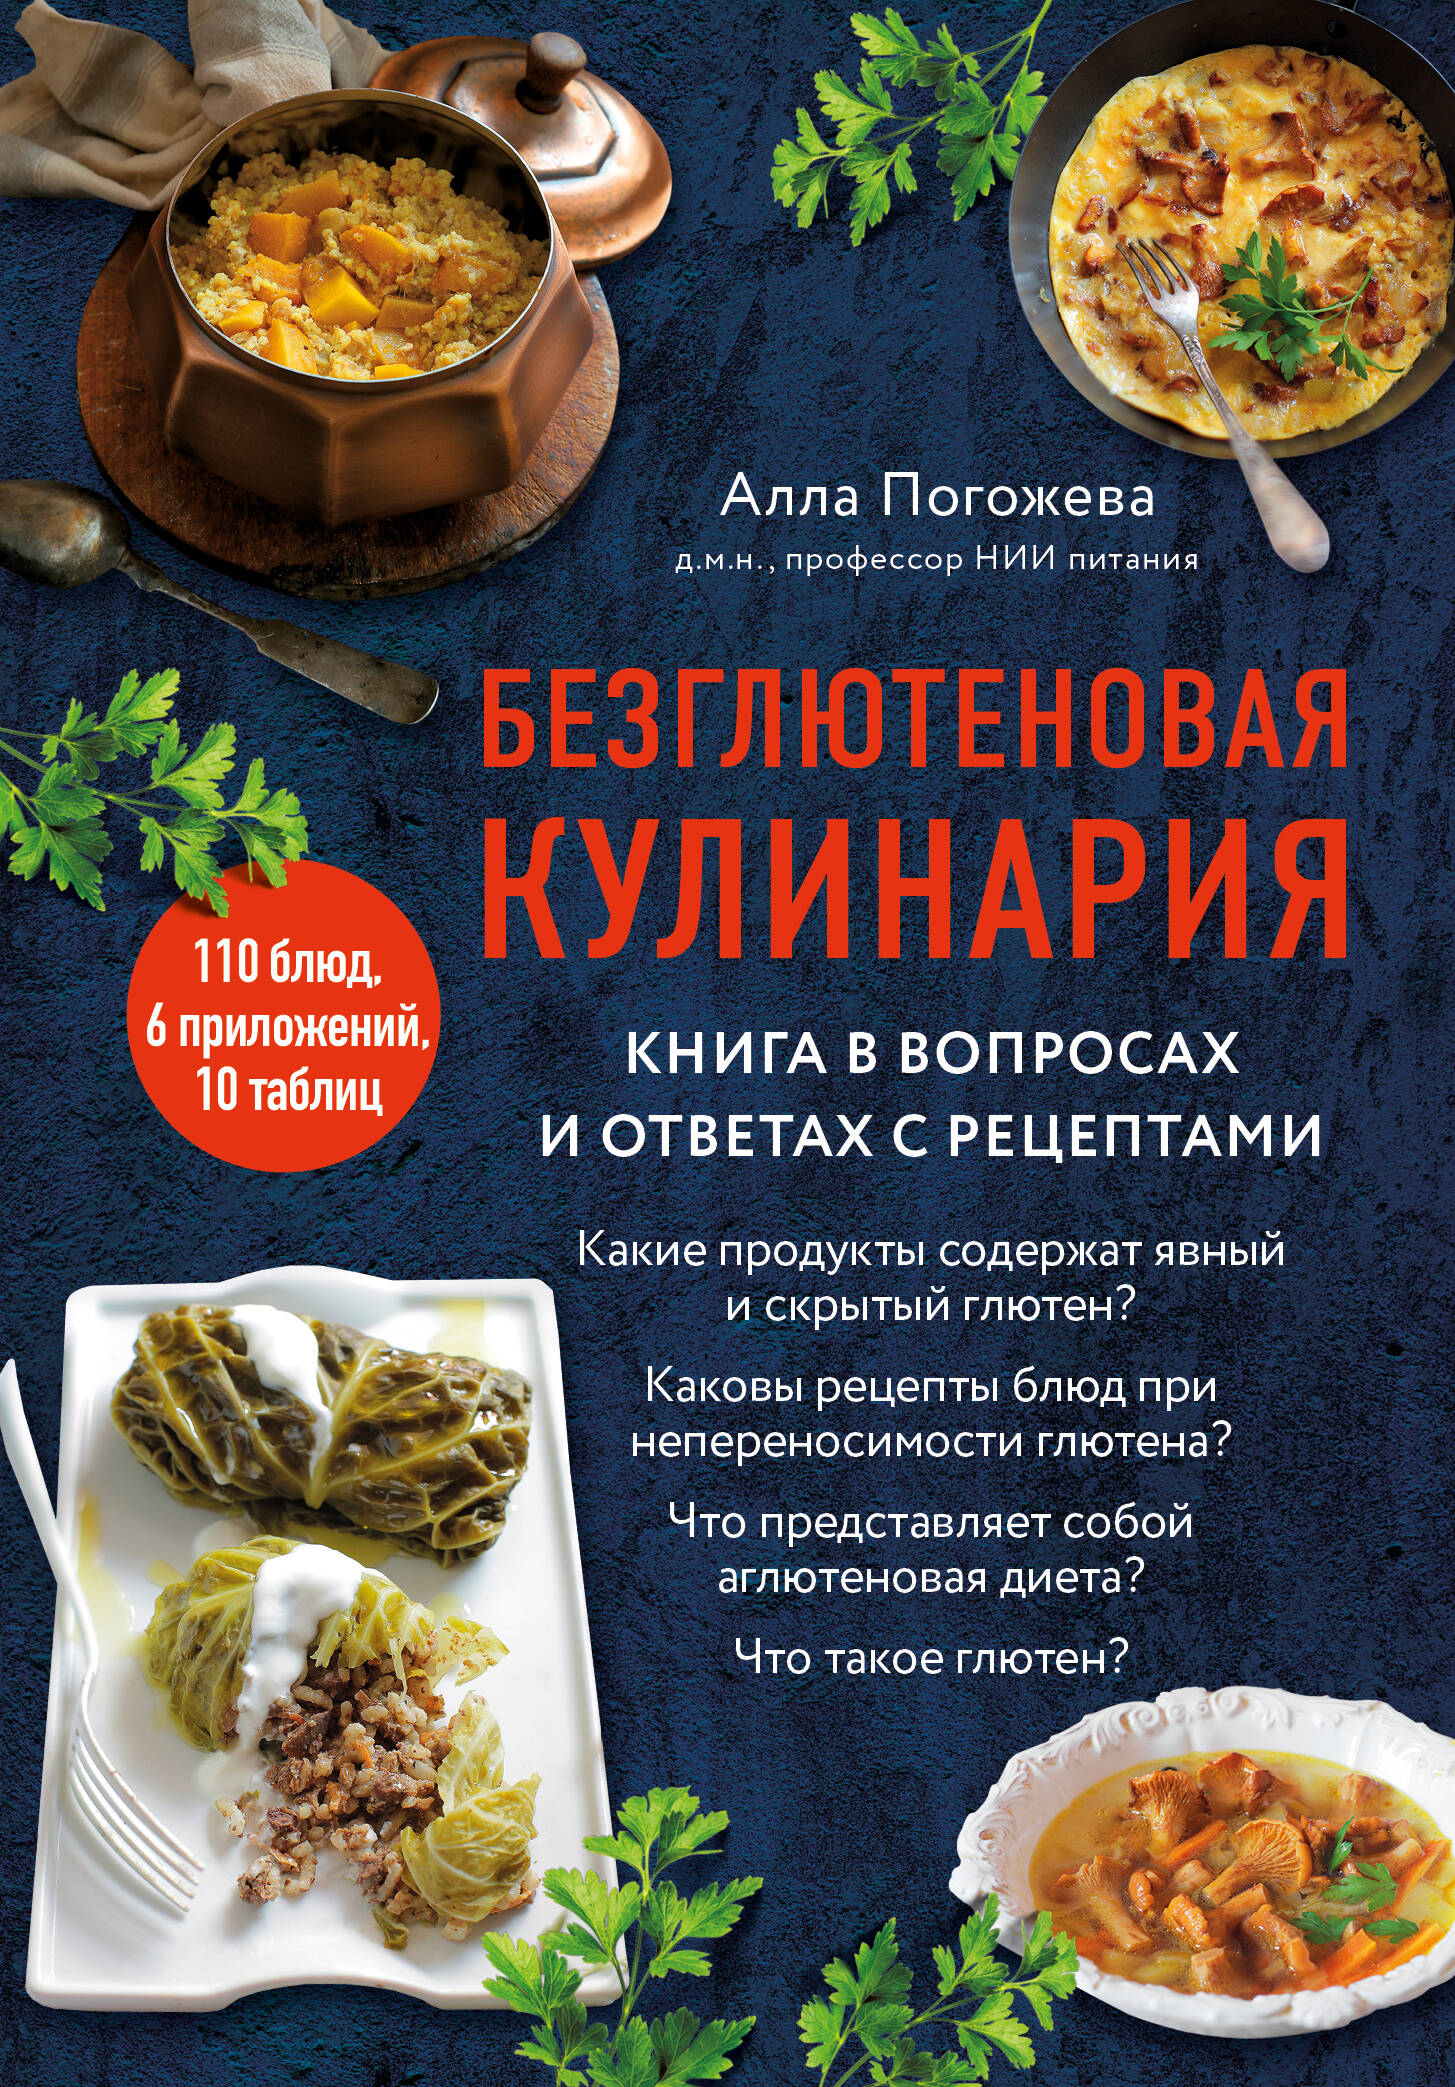 Погожева Алла Владимировна - Безглютеновая кулинария: книга в вопросах и ответах с рецептами